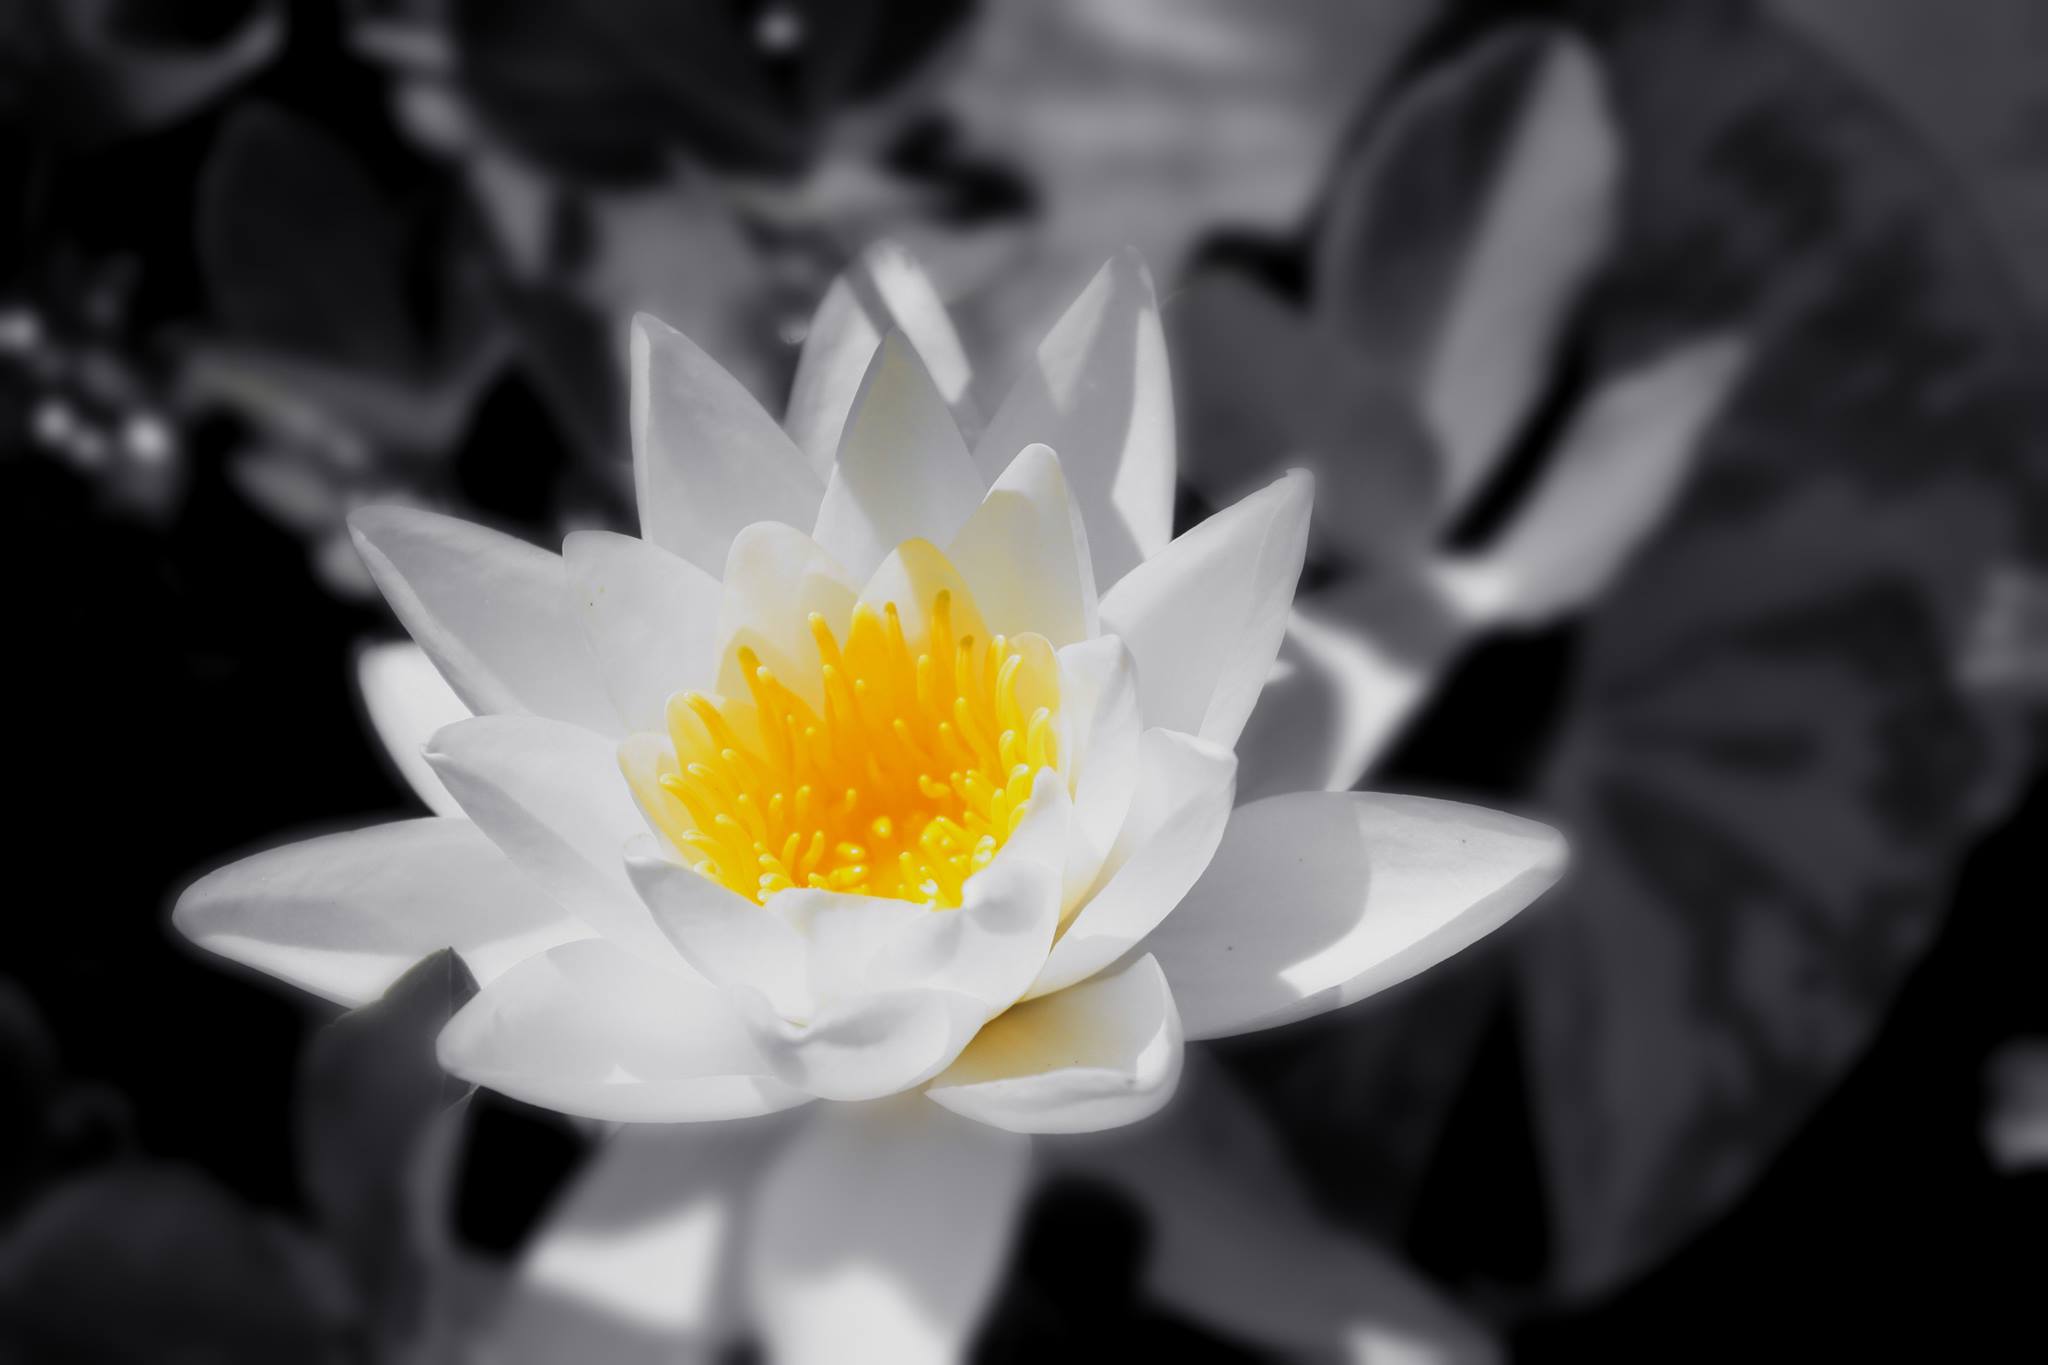 Hình hình ảnh về hoa Sen white nền đen